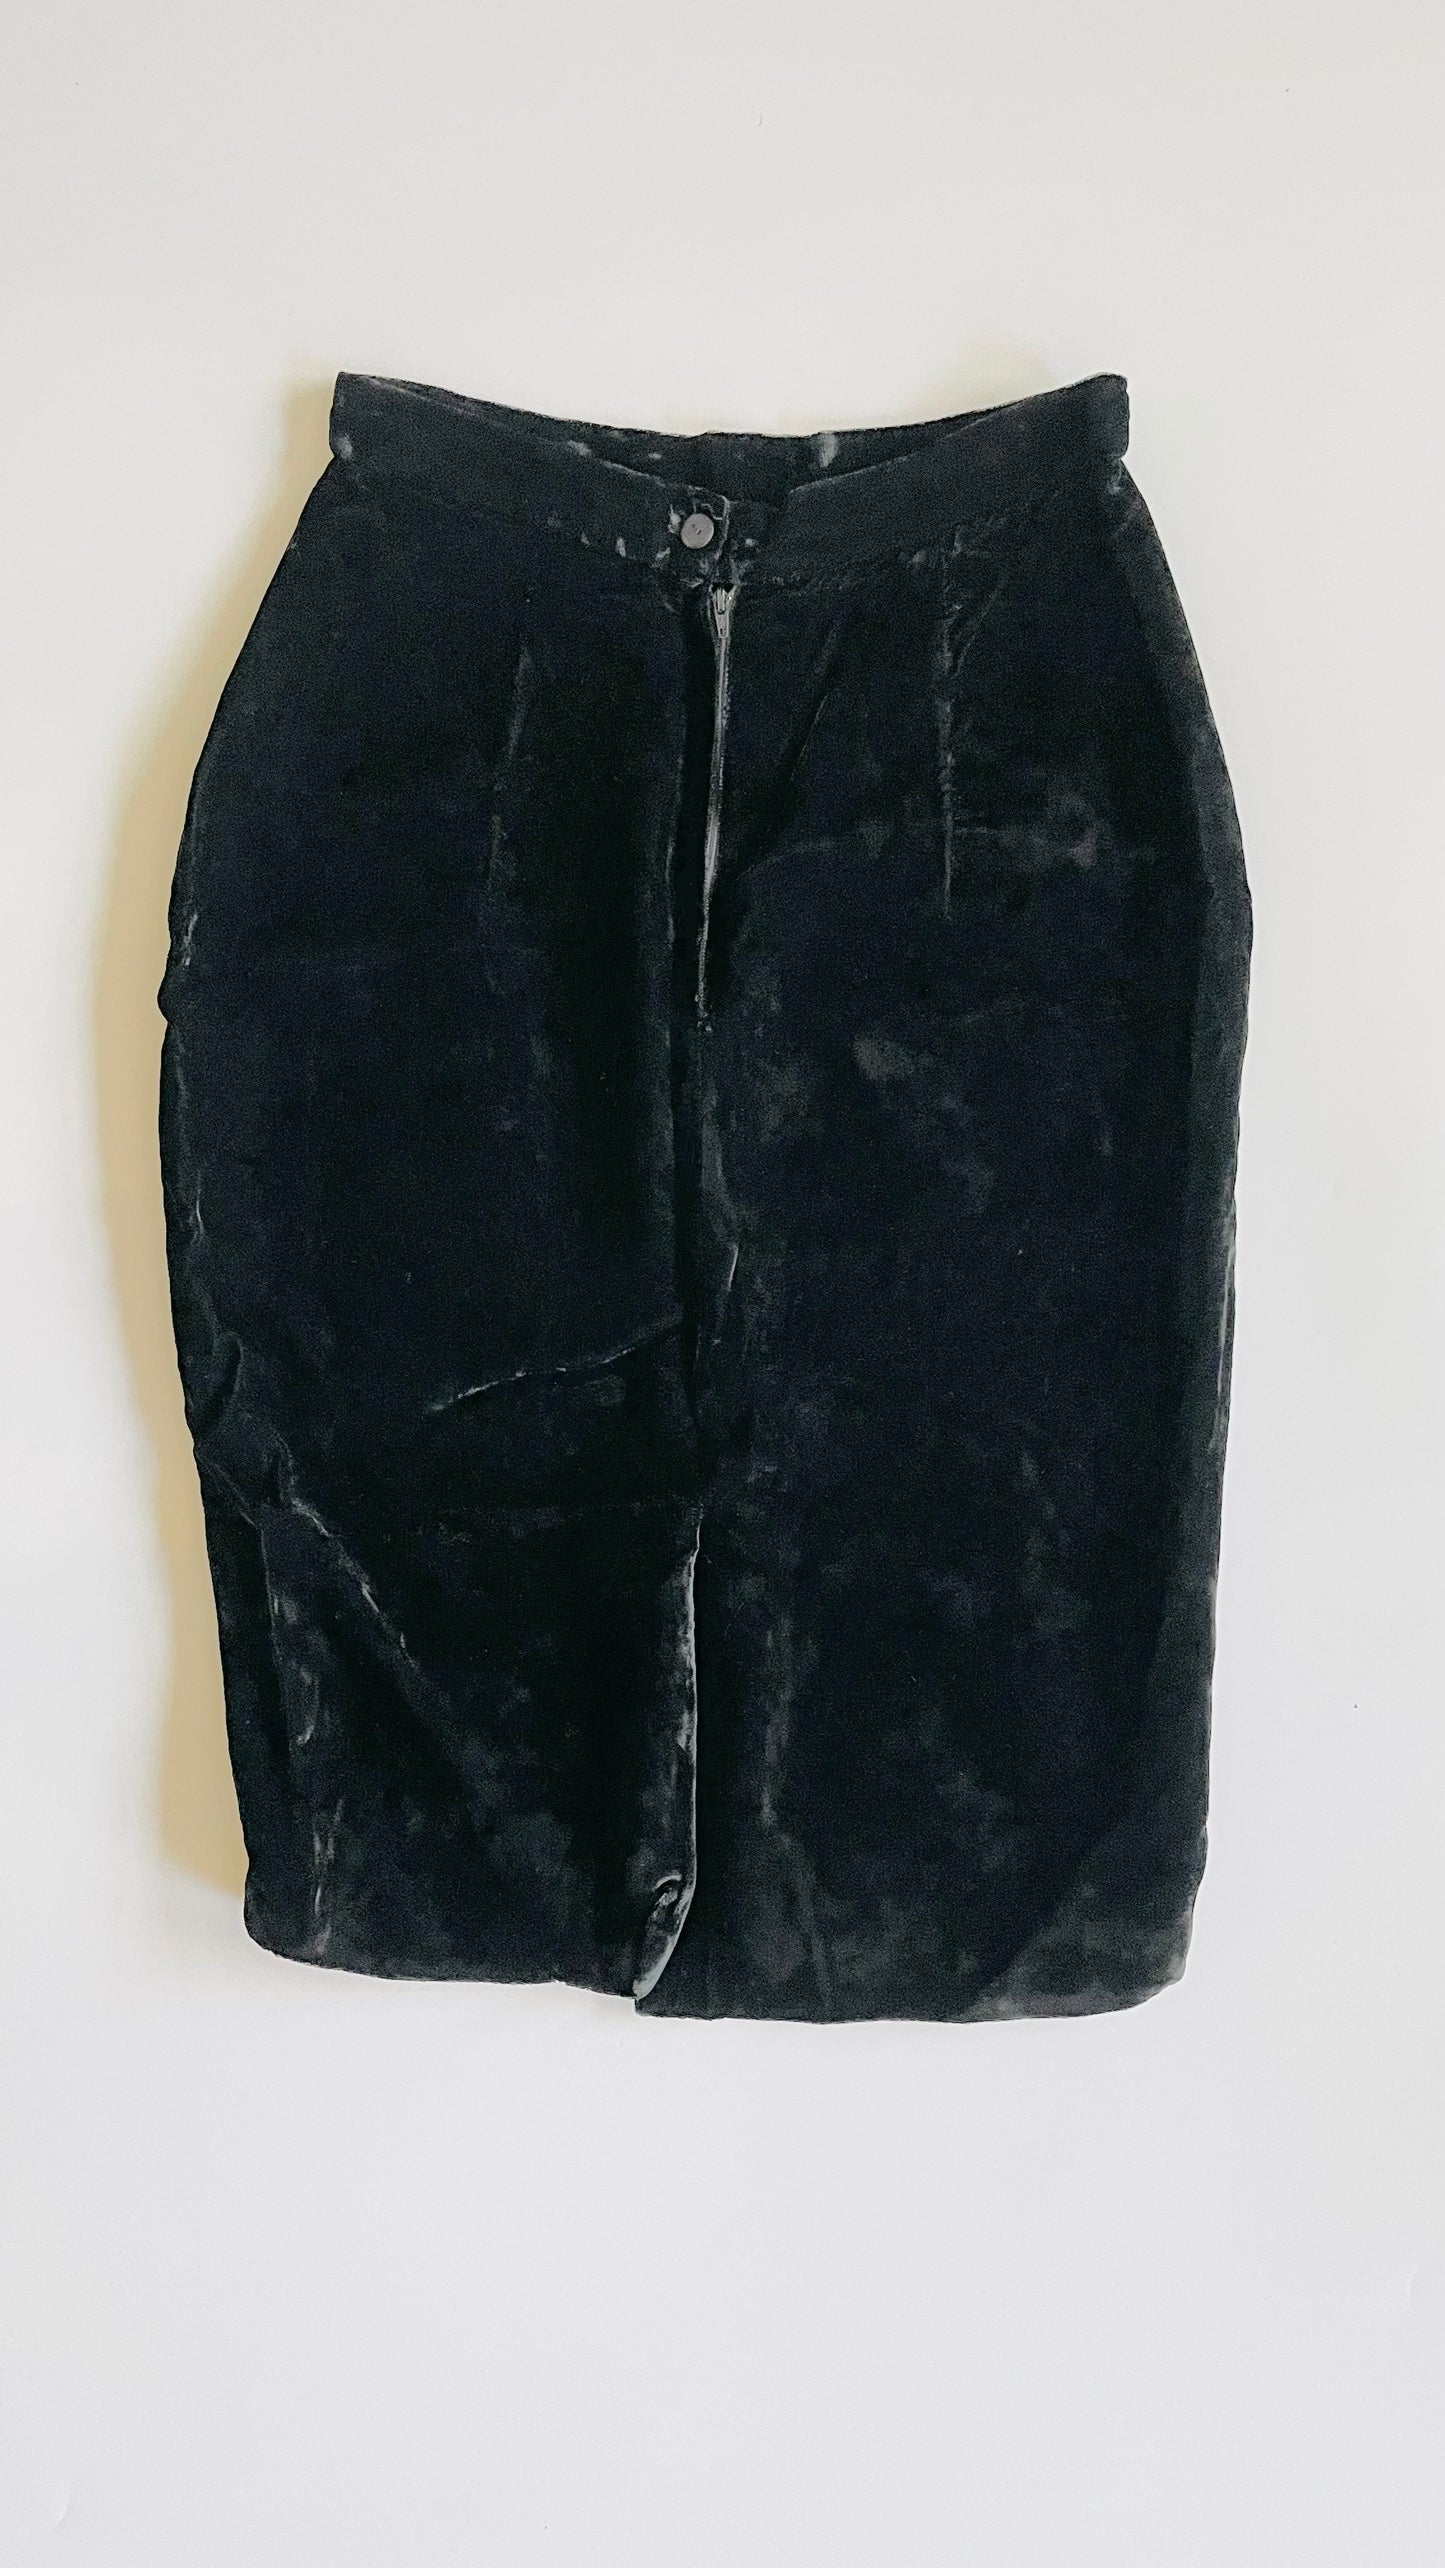 Vintage 90s black crushed velvet midi skirt - Size 10